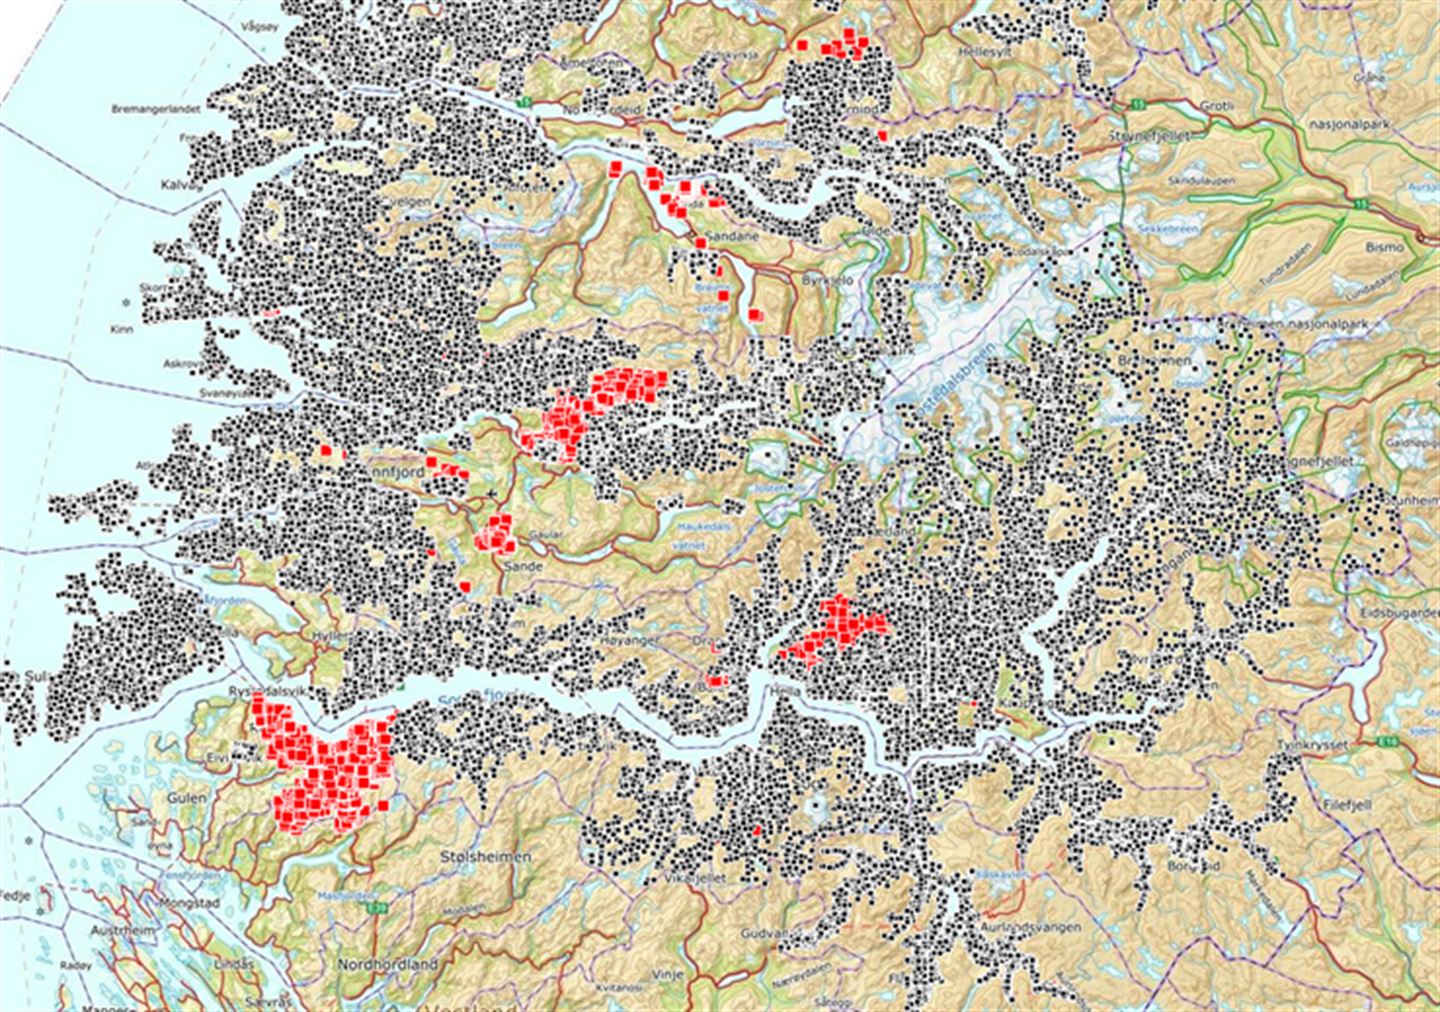 skjermbilde frå stadnamnkart, syner området Sogn og Fjordane med svarte og raude prikkar der det er kartfesta stadnamn. 